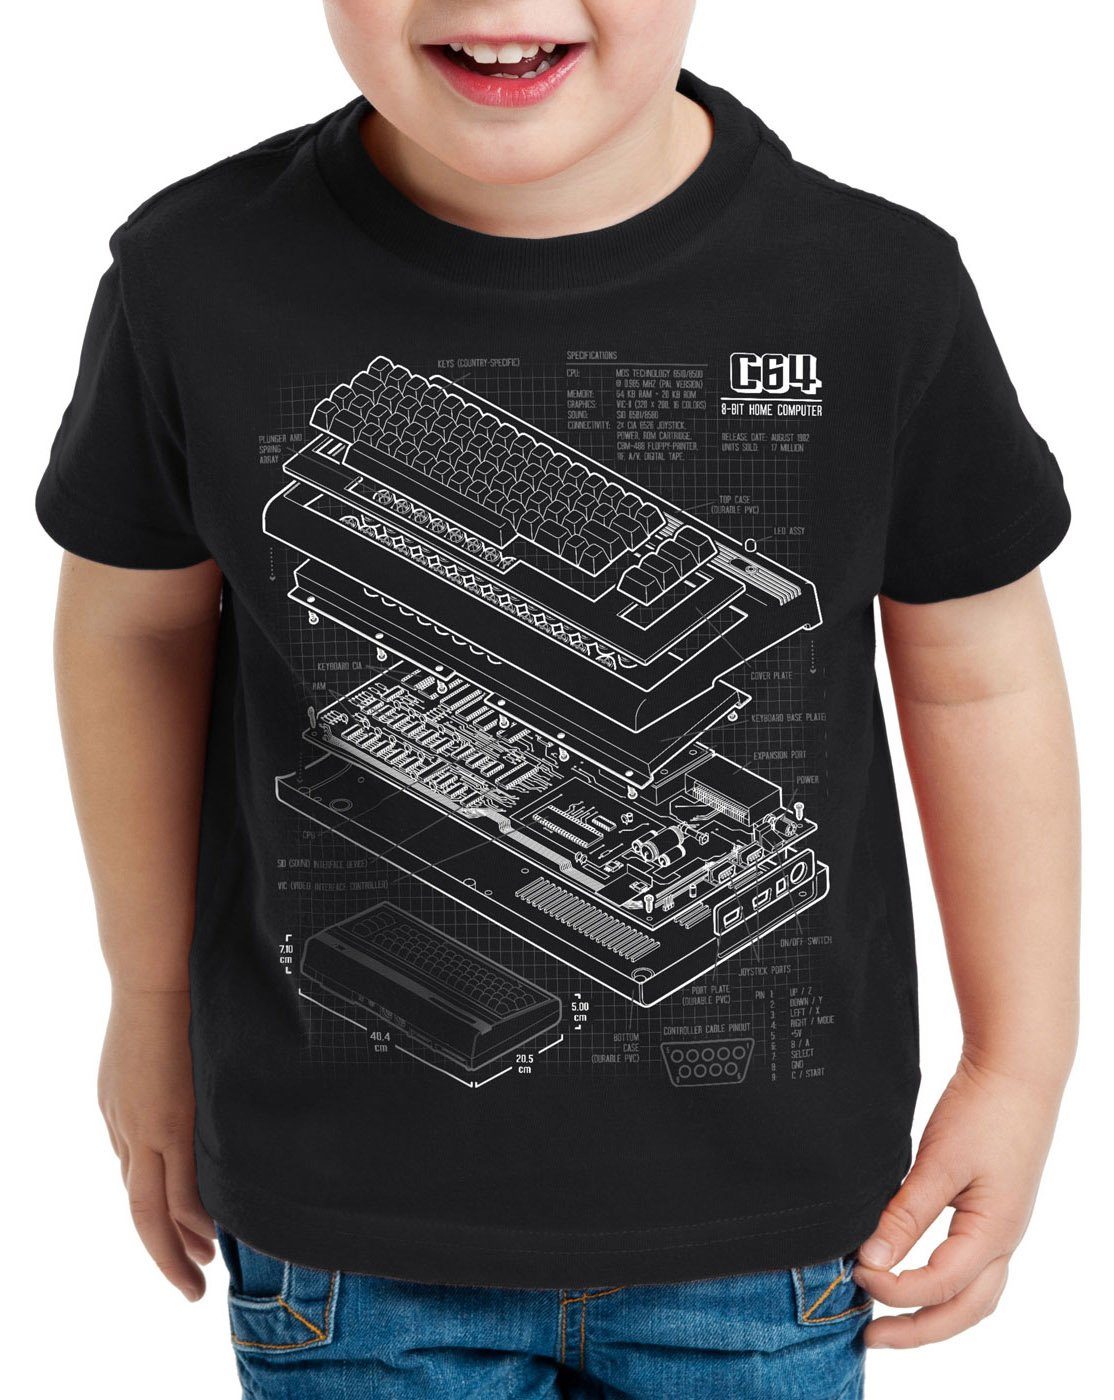 style3 Print-Shirt Kinder T-Shirt C64 Heimcomputer classic gamer schwarz